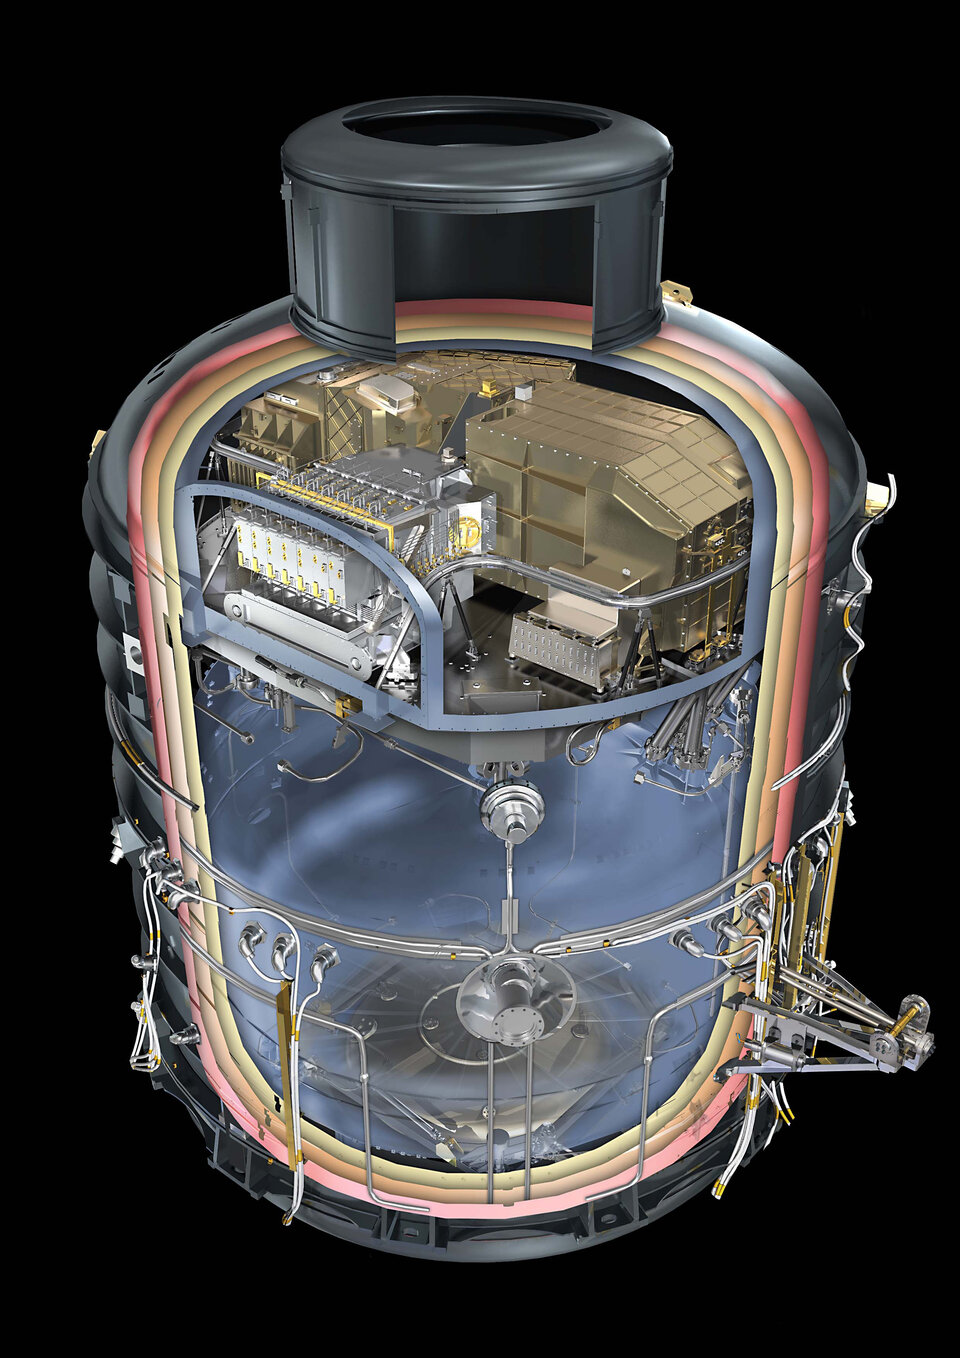 Större delen av Herschel är inneslutet i en "termos" som kyls med flytande helium. På så sätt kan teleskopet hållas några grader över den absoluta nollpunkten vilket minimerar störningarna för den känsliga IR-mottagaren.